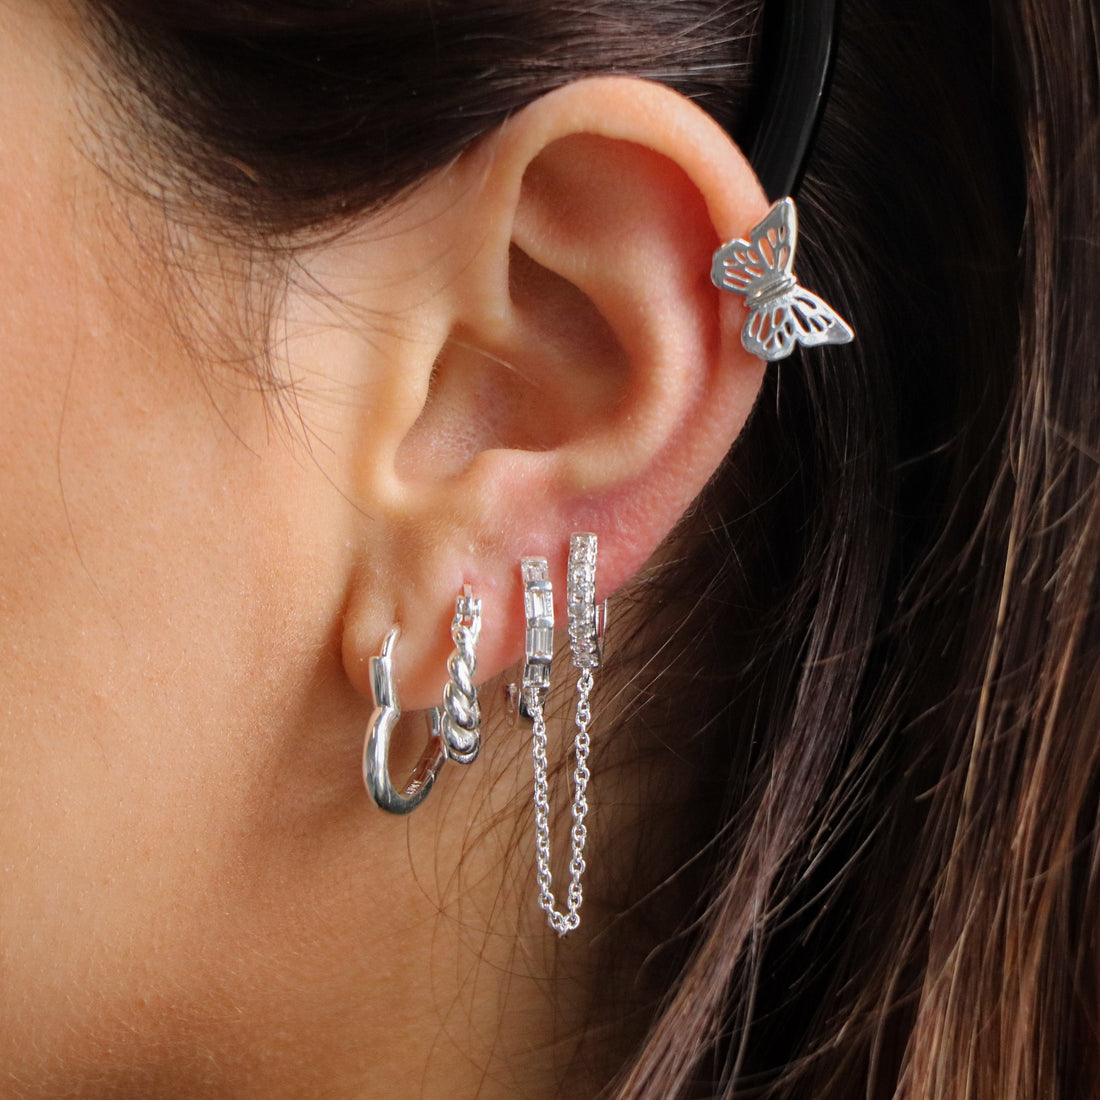 24 Best Earrings for Sensitive Ears 2022 - Hypoallergenic Earrings